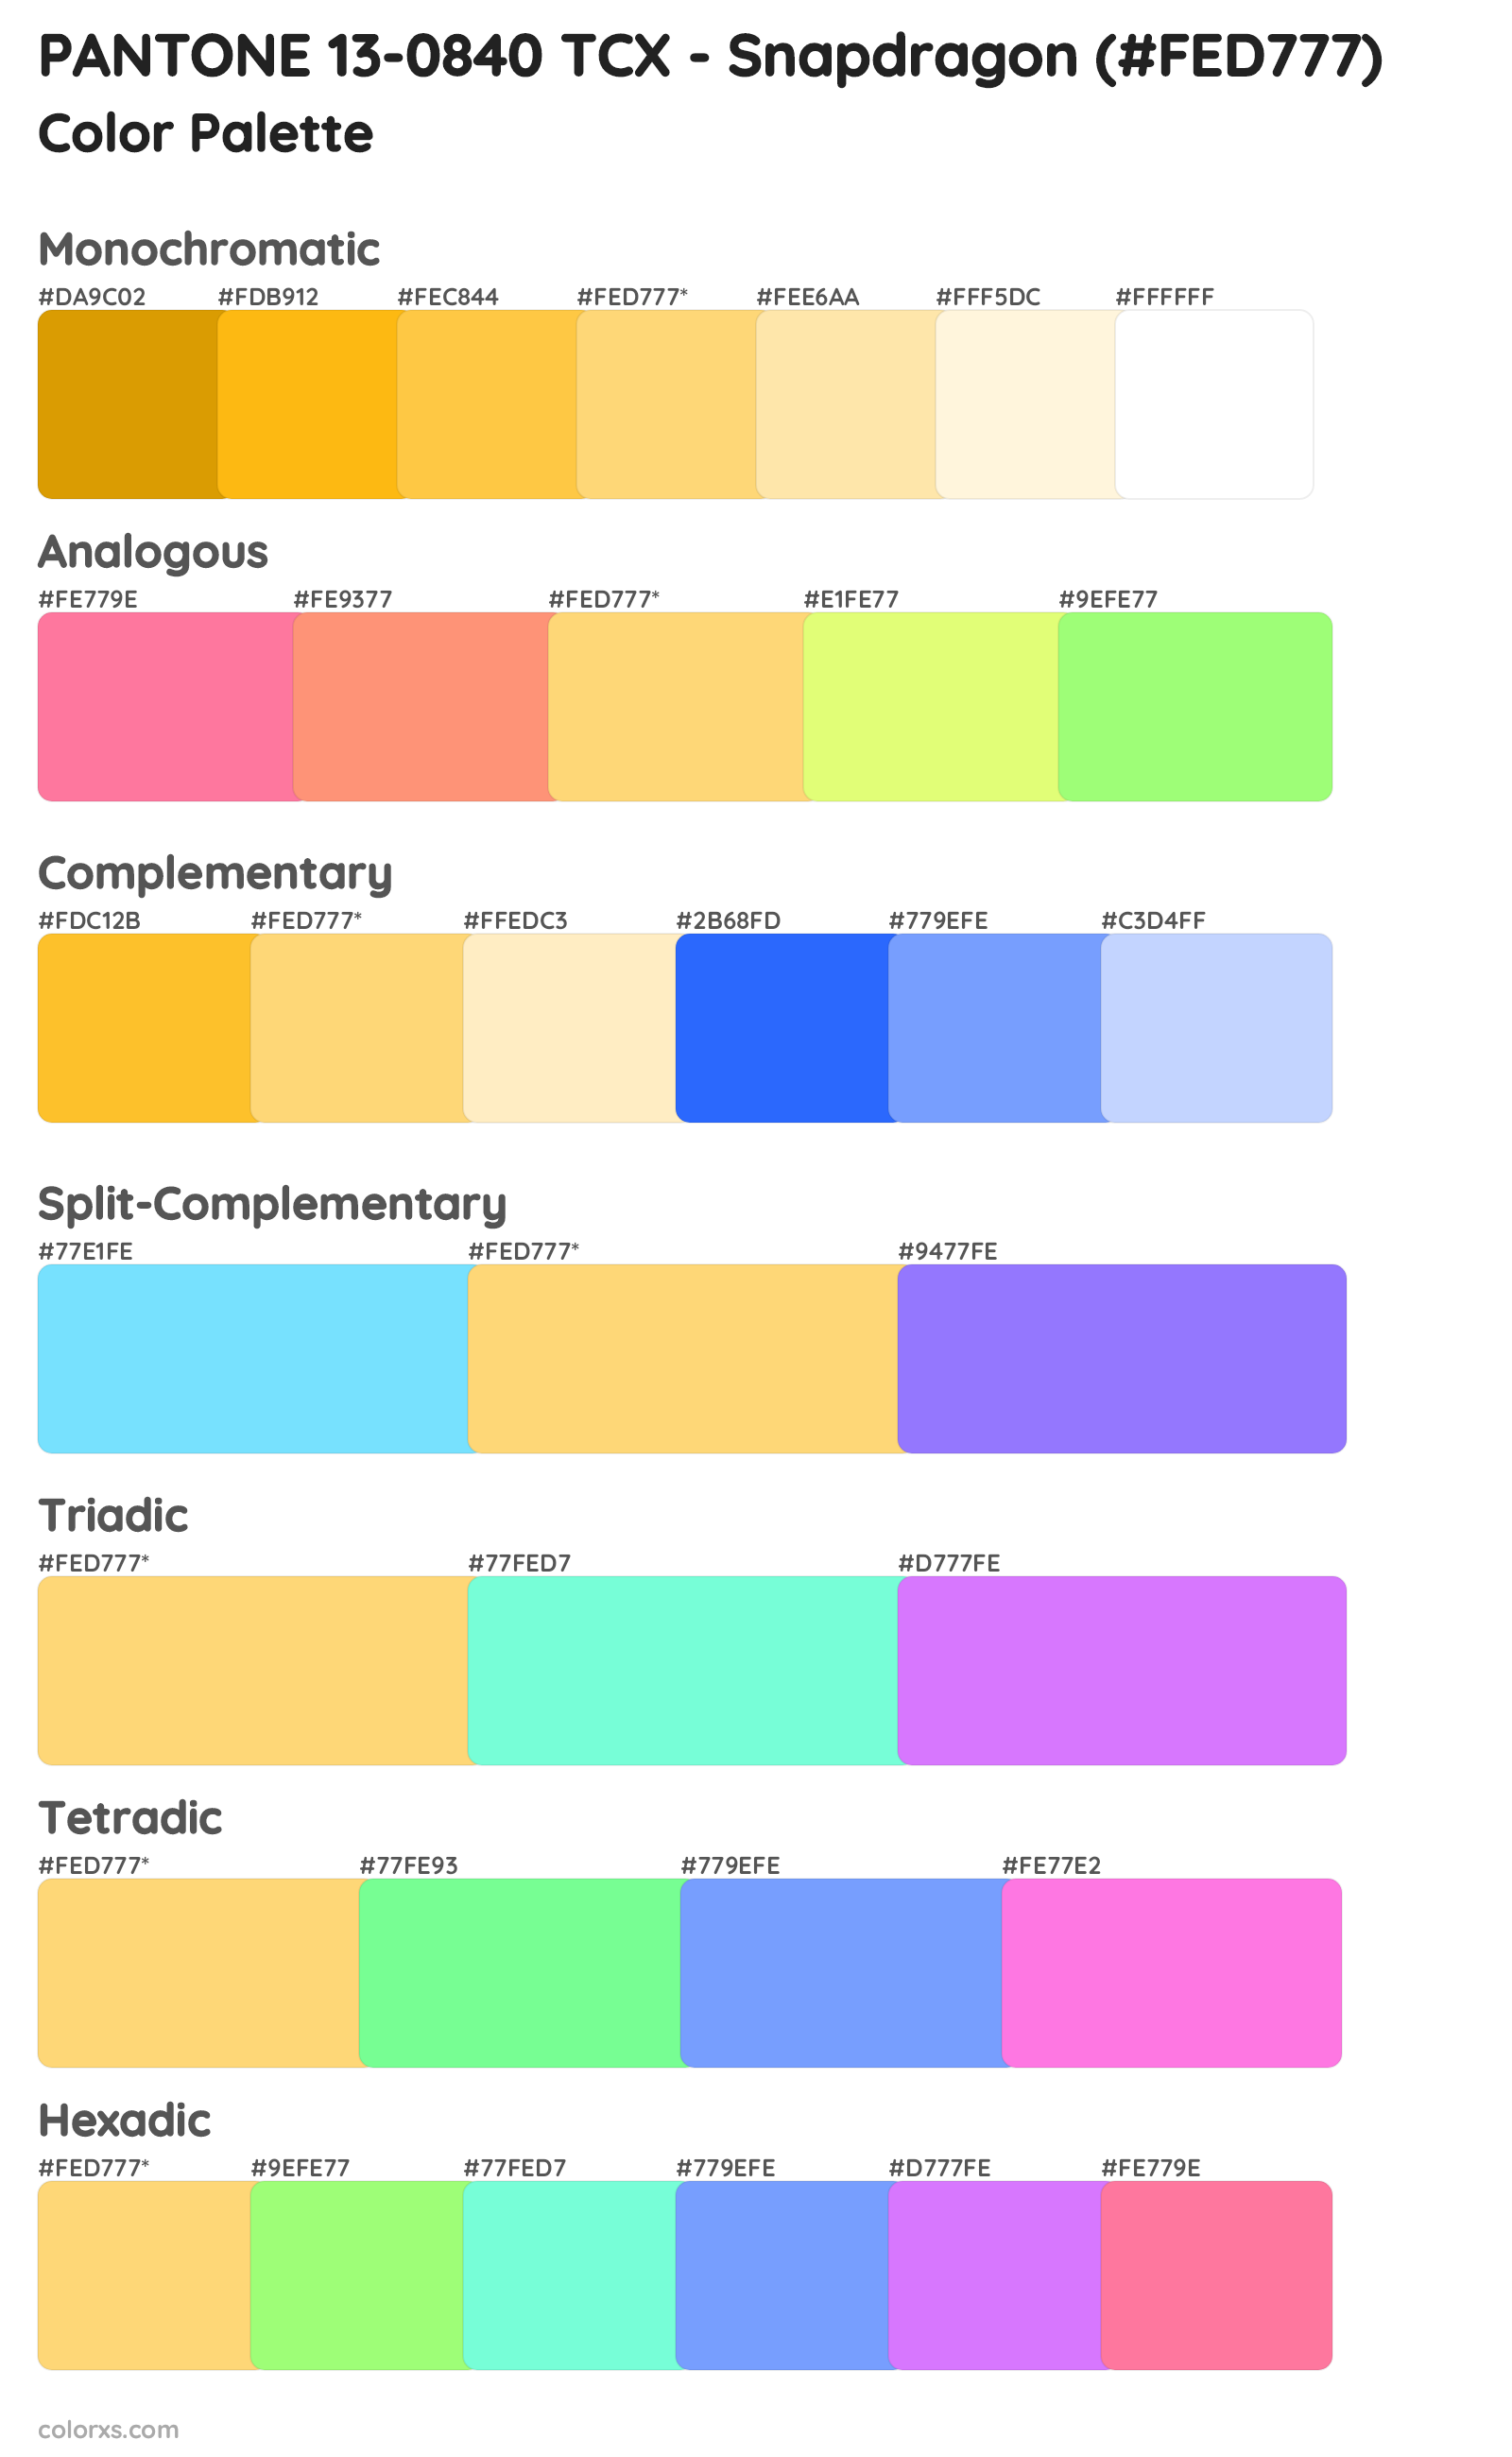 PANTONE 13-0840 TCX - Snapdragon Color Scheme Palettes